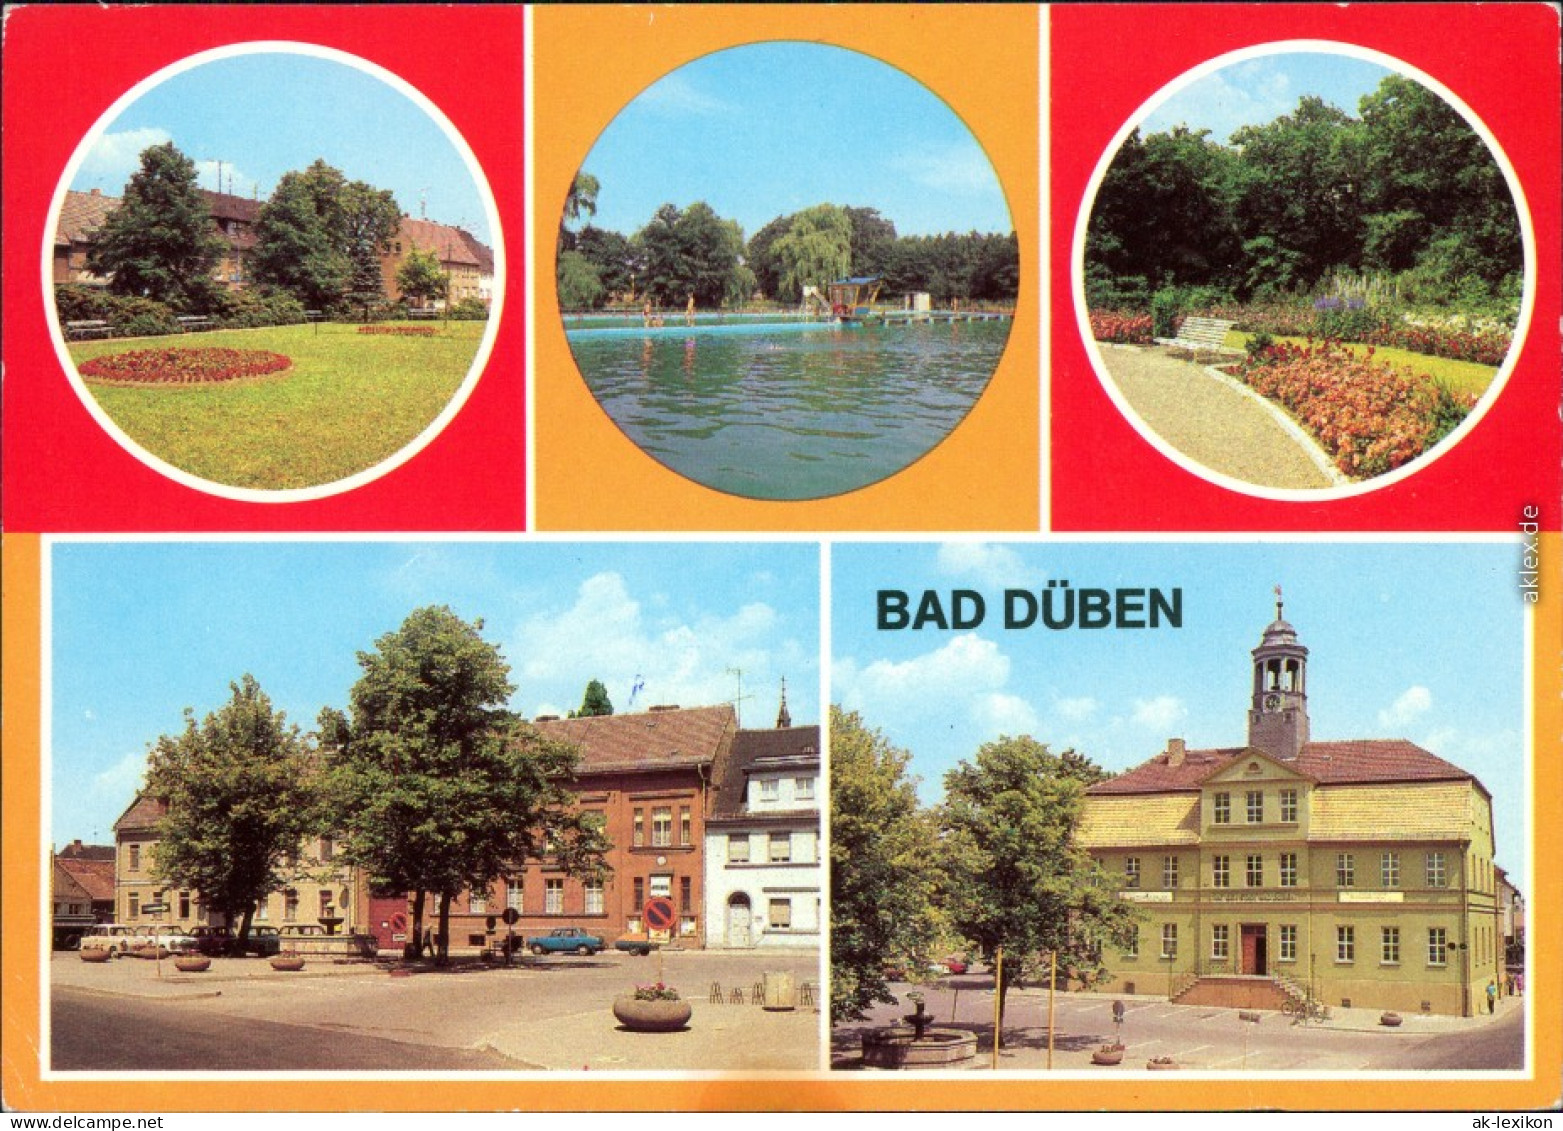 Bad Düben Platz Der Jugend, Waldbad Hammermühle, Kurpark, Marktplatz  G1981 - Bad Düben